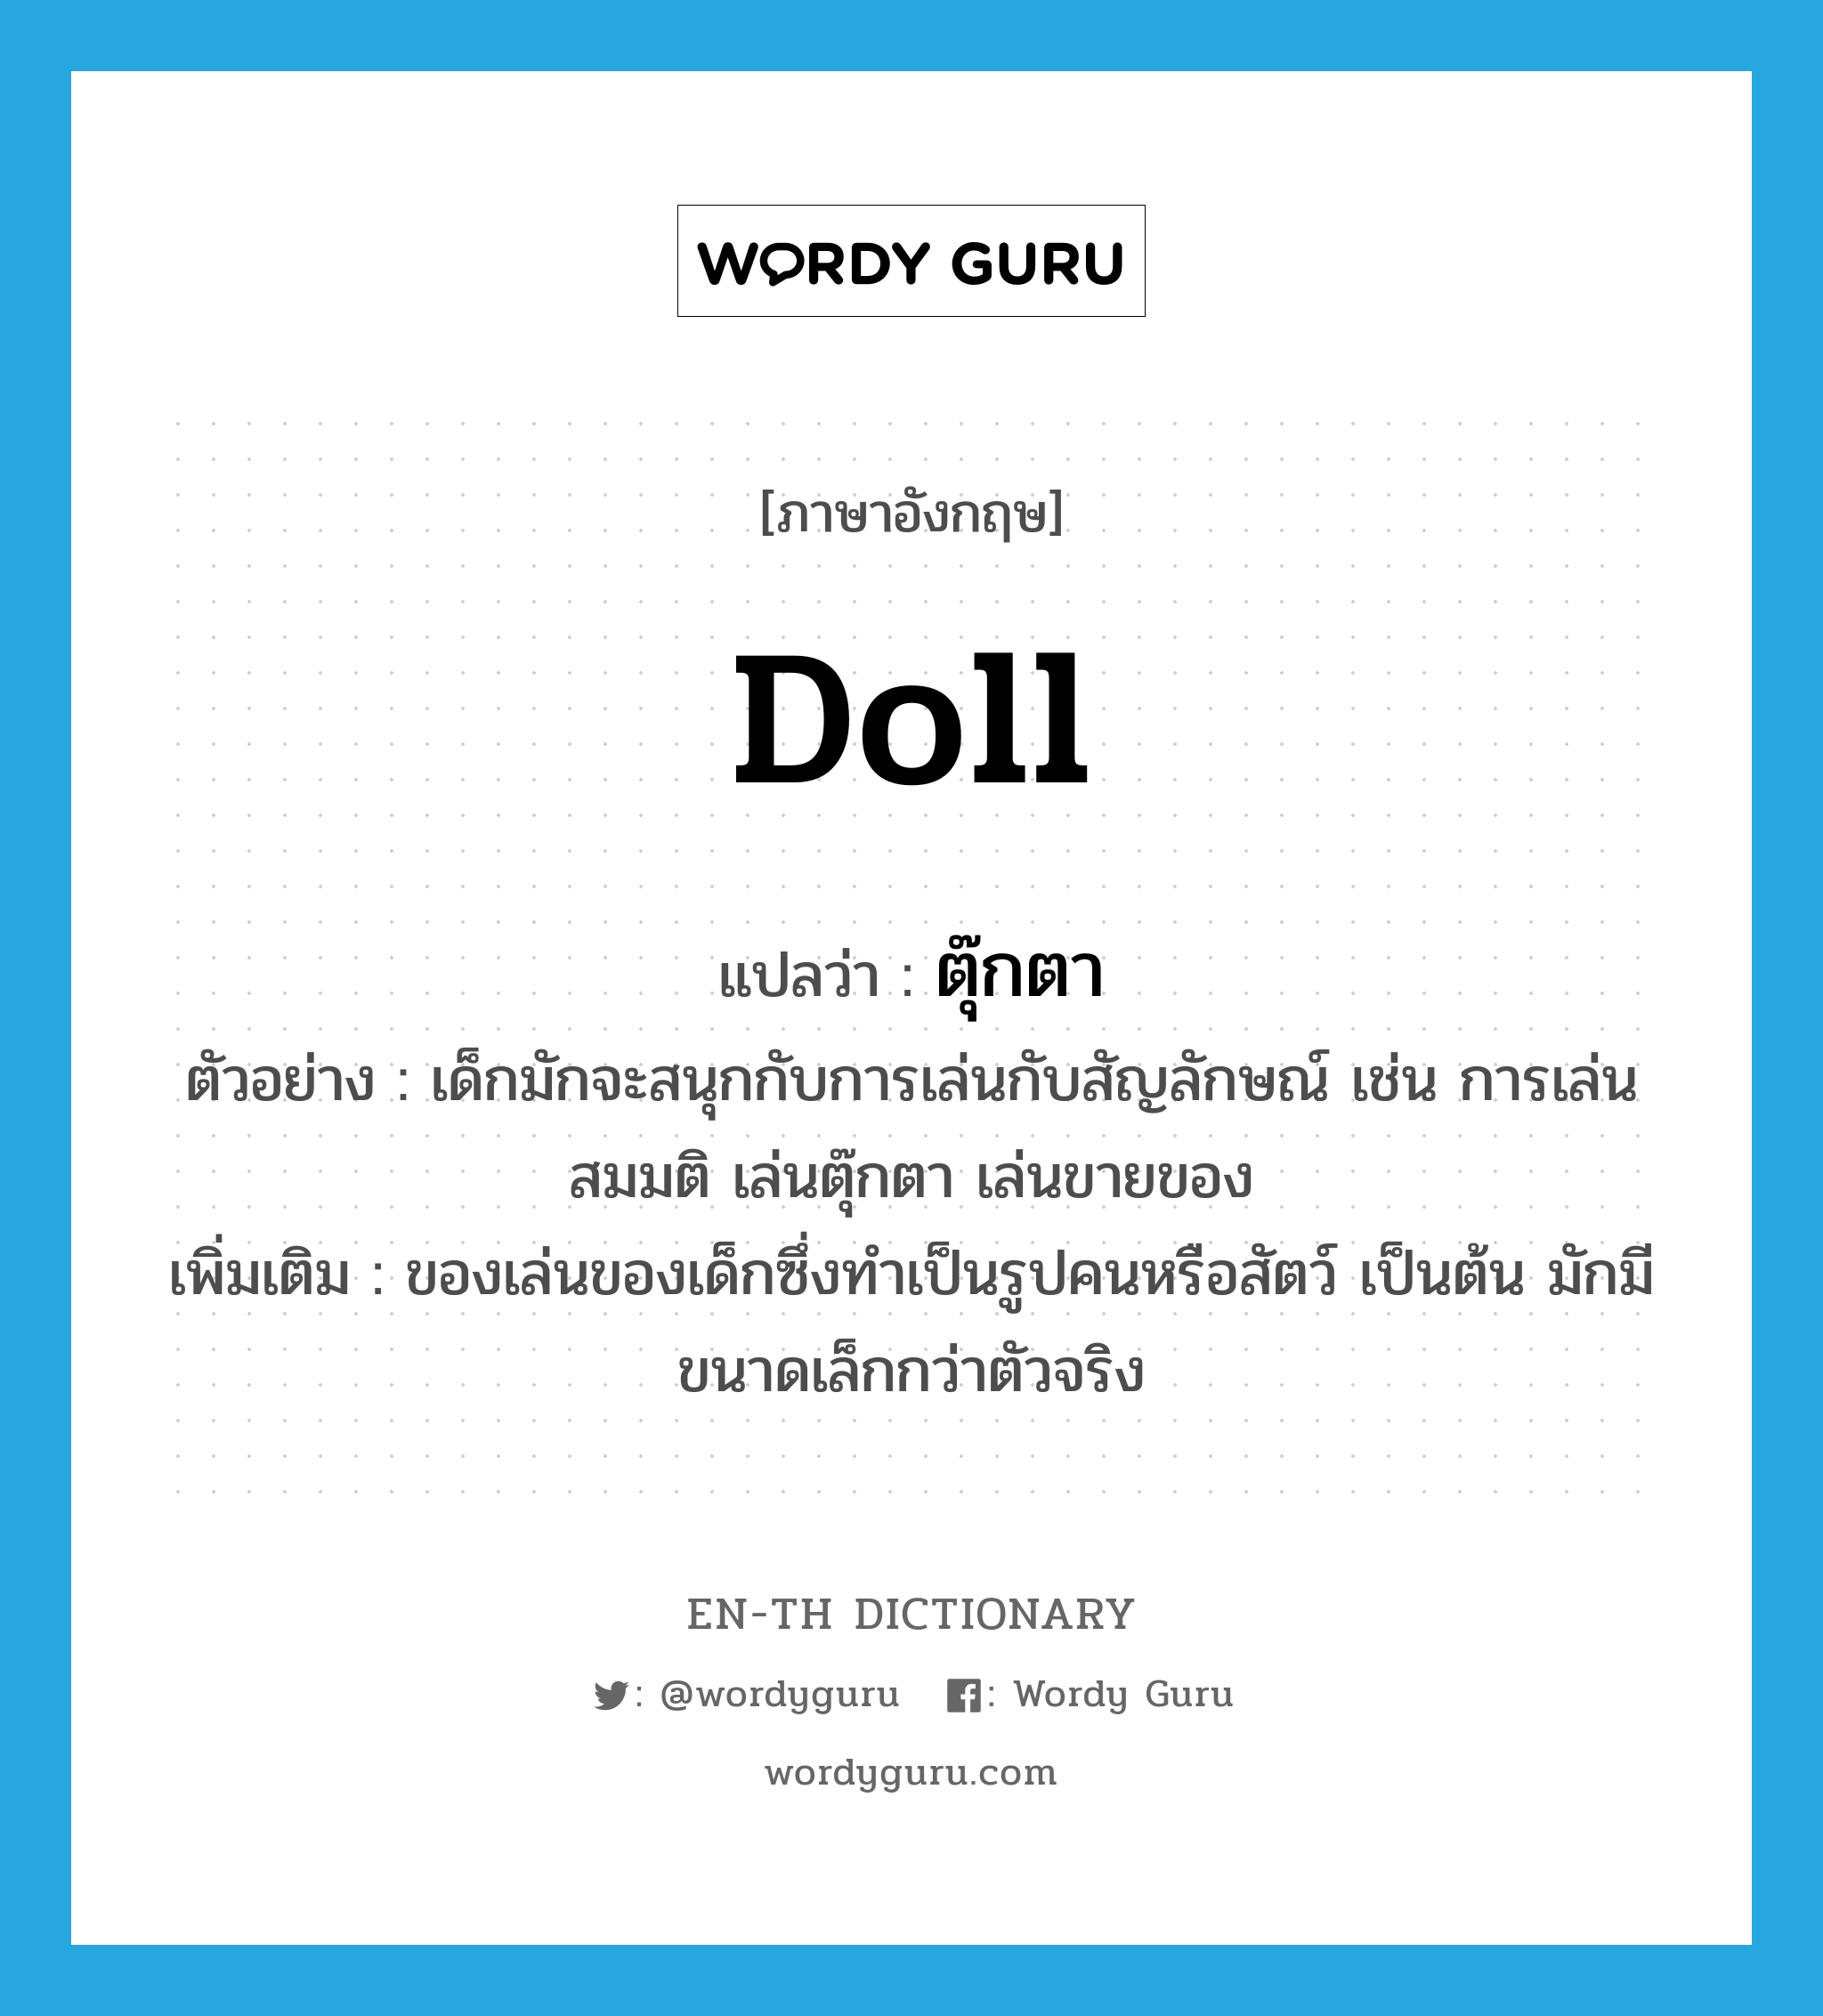 ตุ๊กตา ภาษาอังกฤษ?, คำศัพท์ภาษาอังกฤษ ตุ๊กตา แปลว่า doll ประเภท N ตัวอย่าง เด็กมักจะสนุกกับการเล่นกับสัญลักษณ์ เช่น การเล่นสมมติ เล่นตุ๊กตา เล่นขายของ เพิ่มเติม ของเล่นของเด็กซึ่งทำเป็นรูปคนหรือสัตว์ เป็นต้น มักมีขนาดเล็กกว่าตัวจริง หมวด N